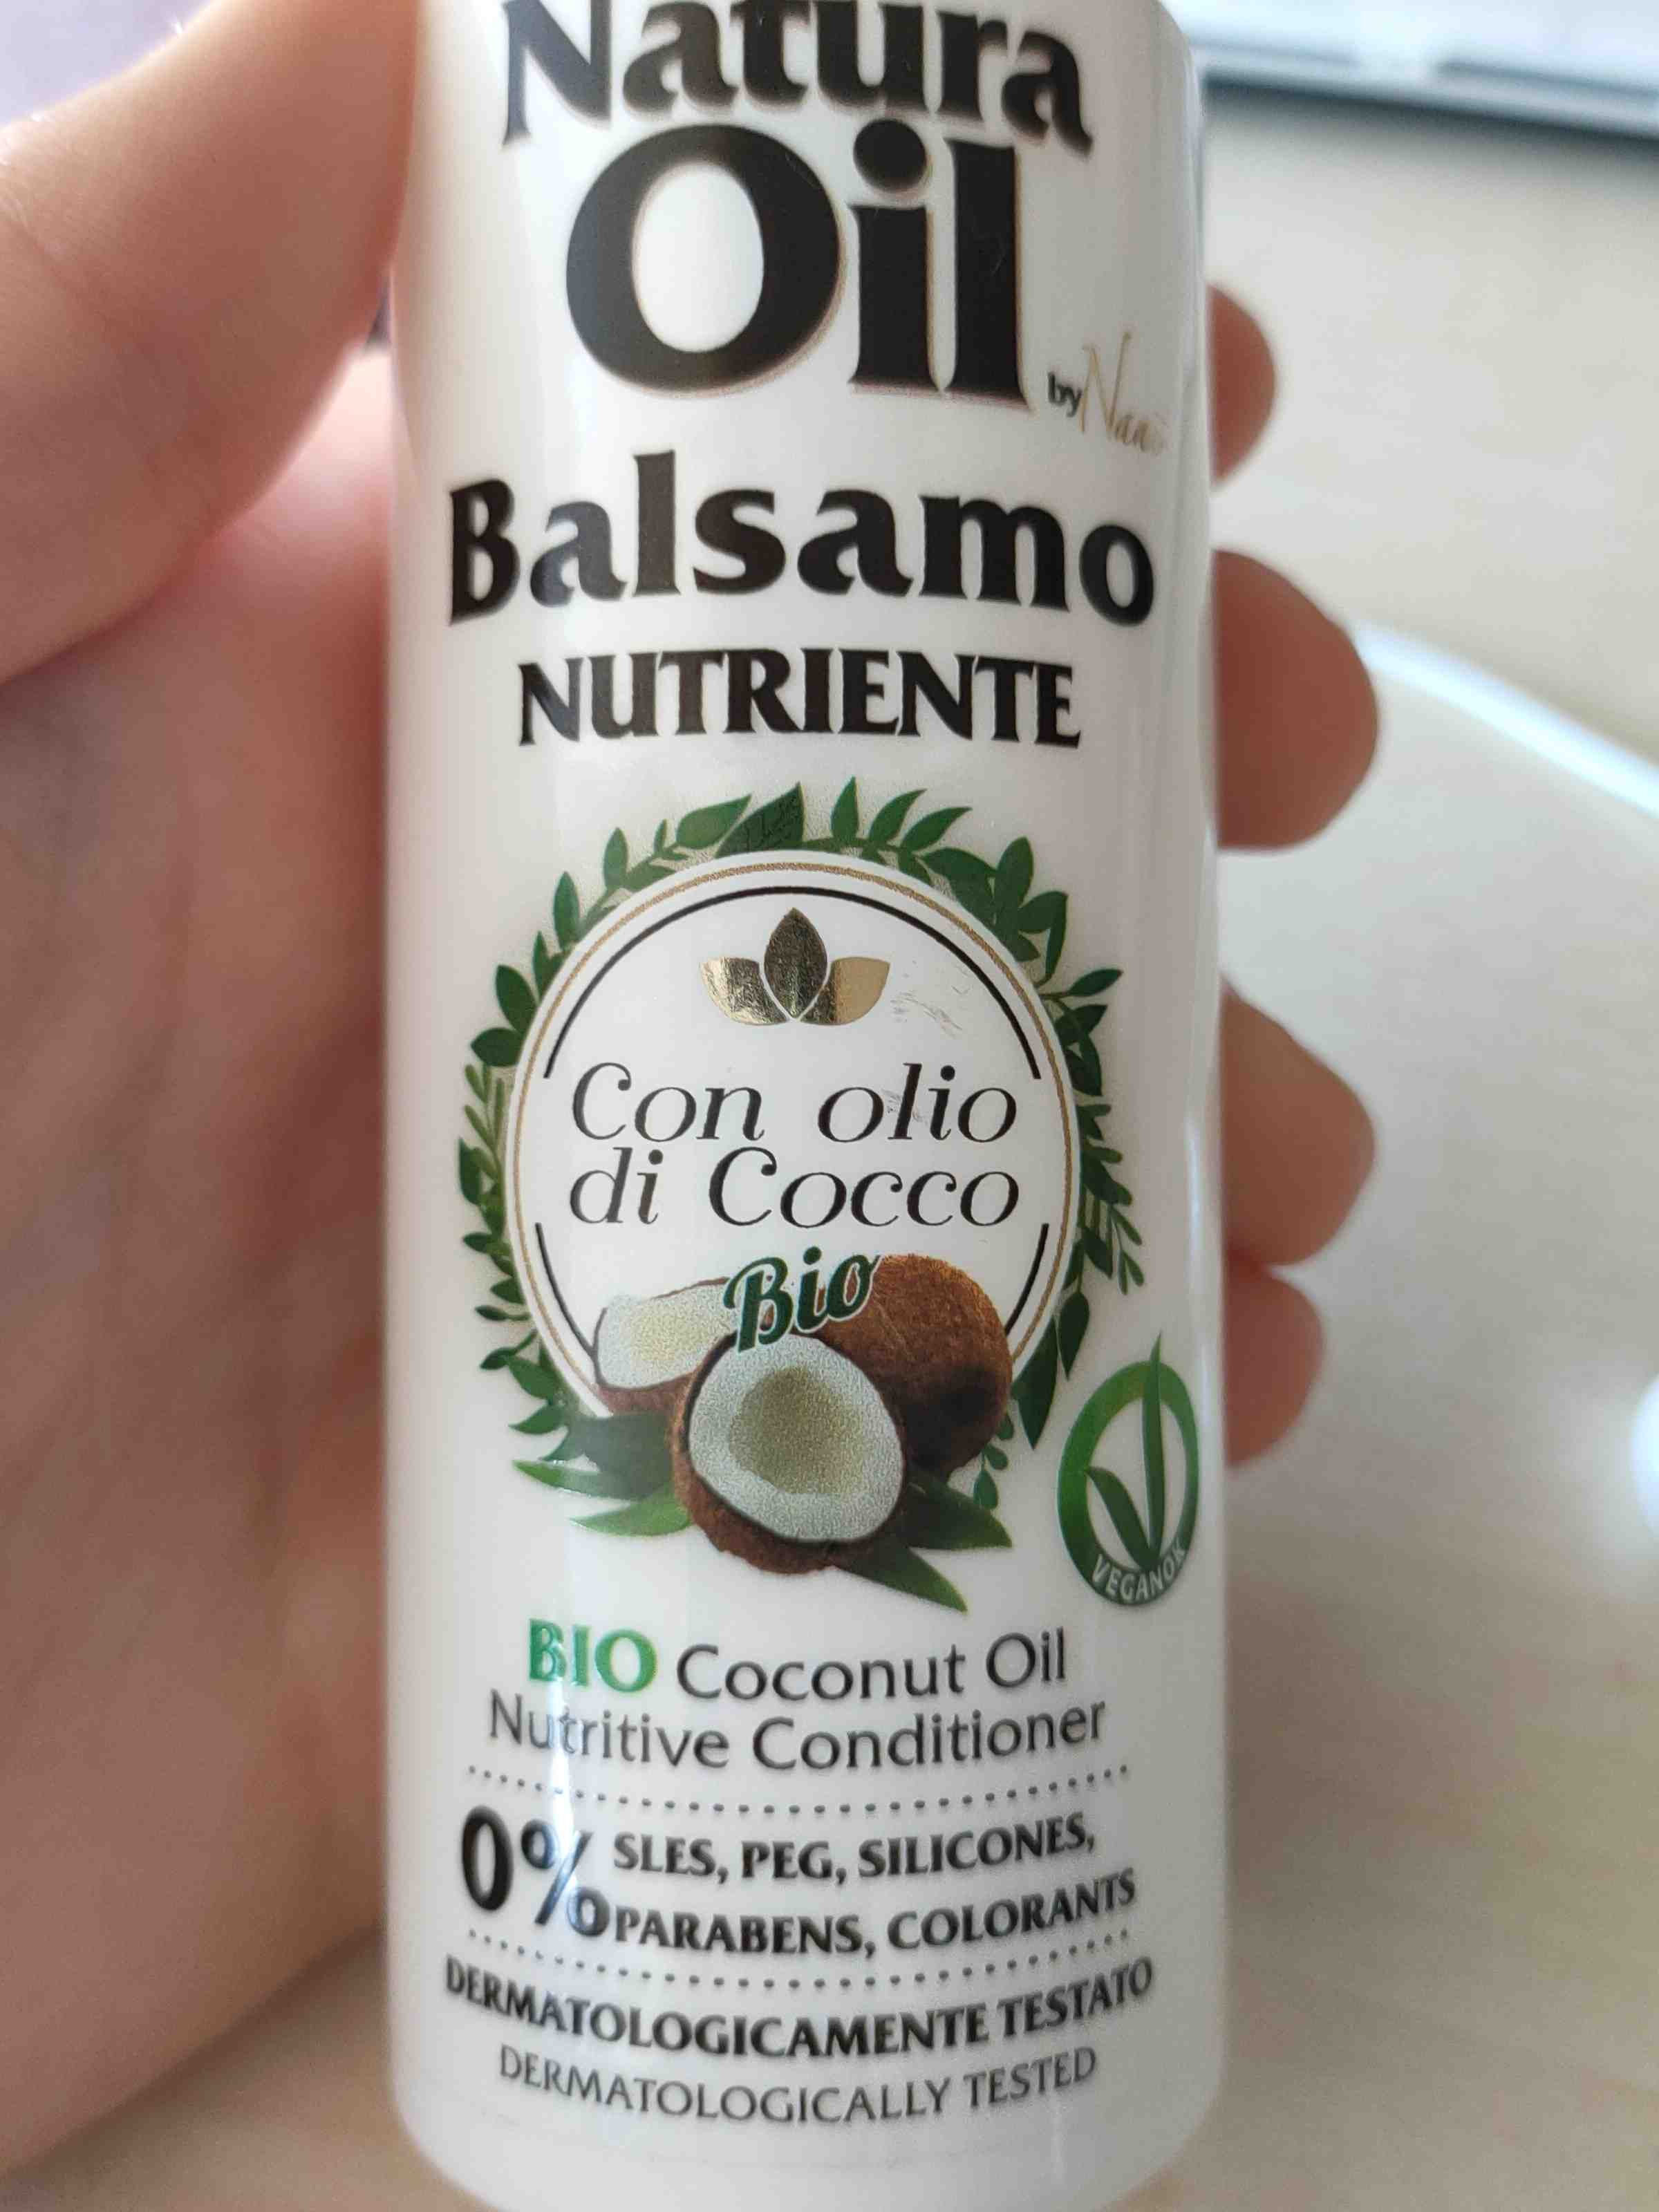 Balsamo - Product - en